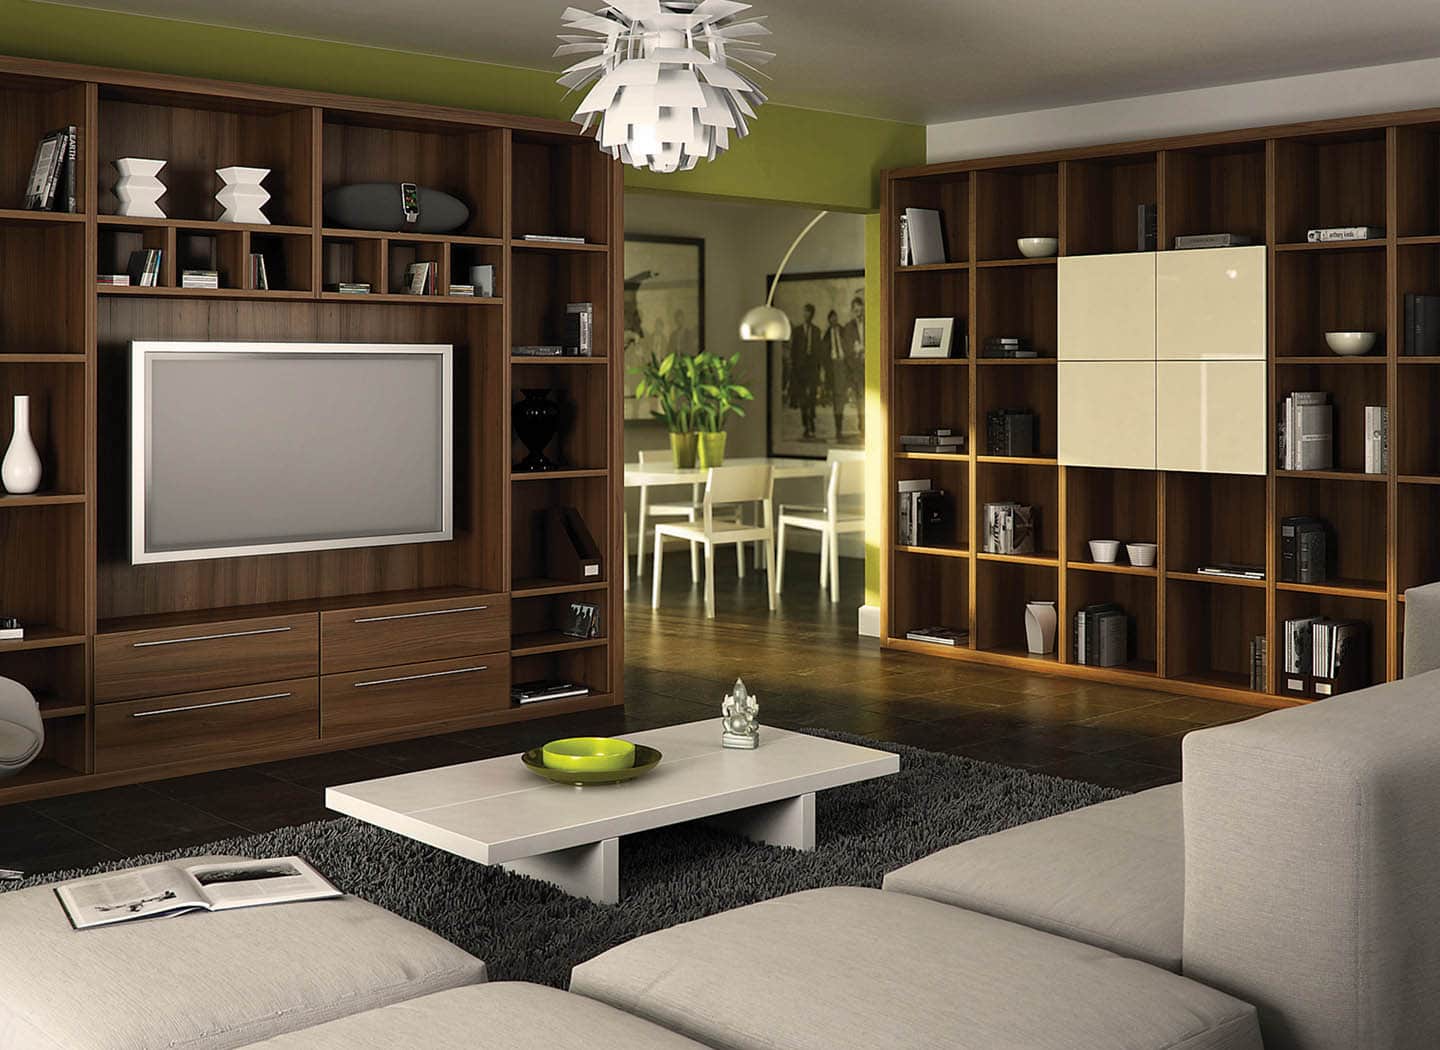 furniture for living room uk